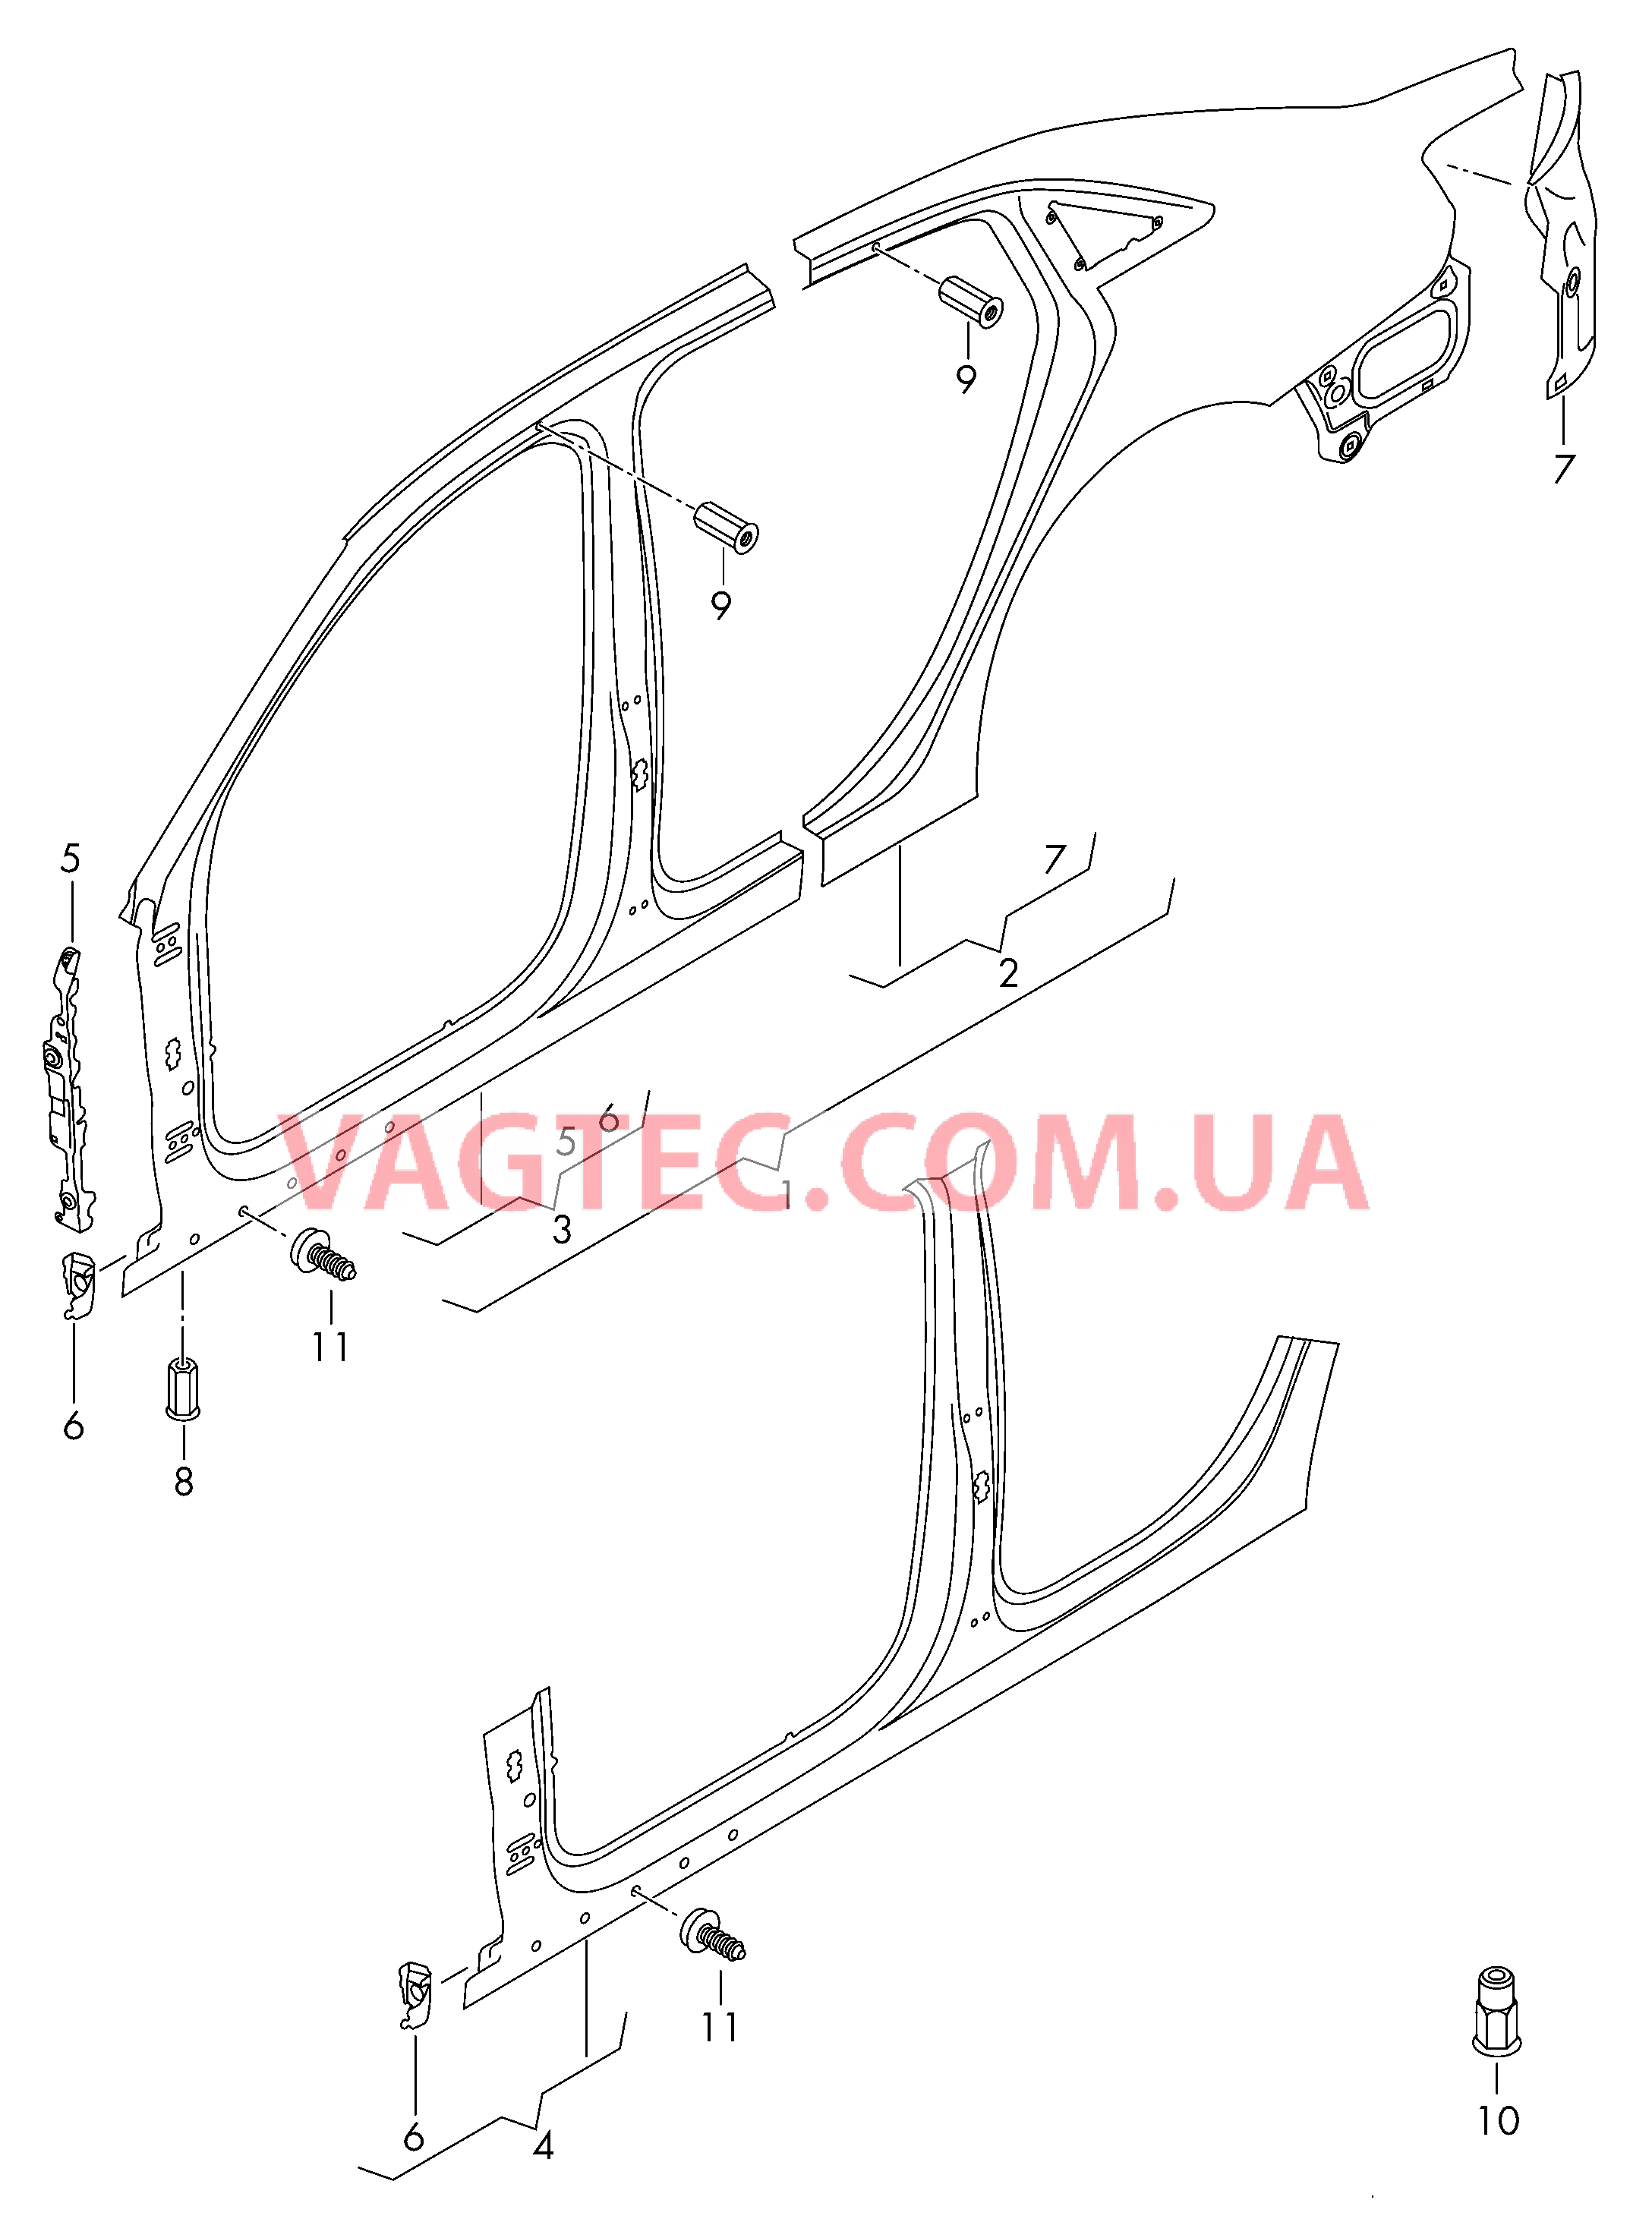 Pама боковой стенки Отрезная деталь боковина  для AUDI A3 2019